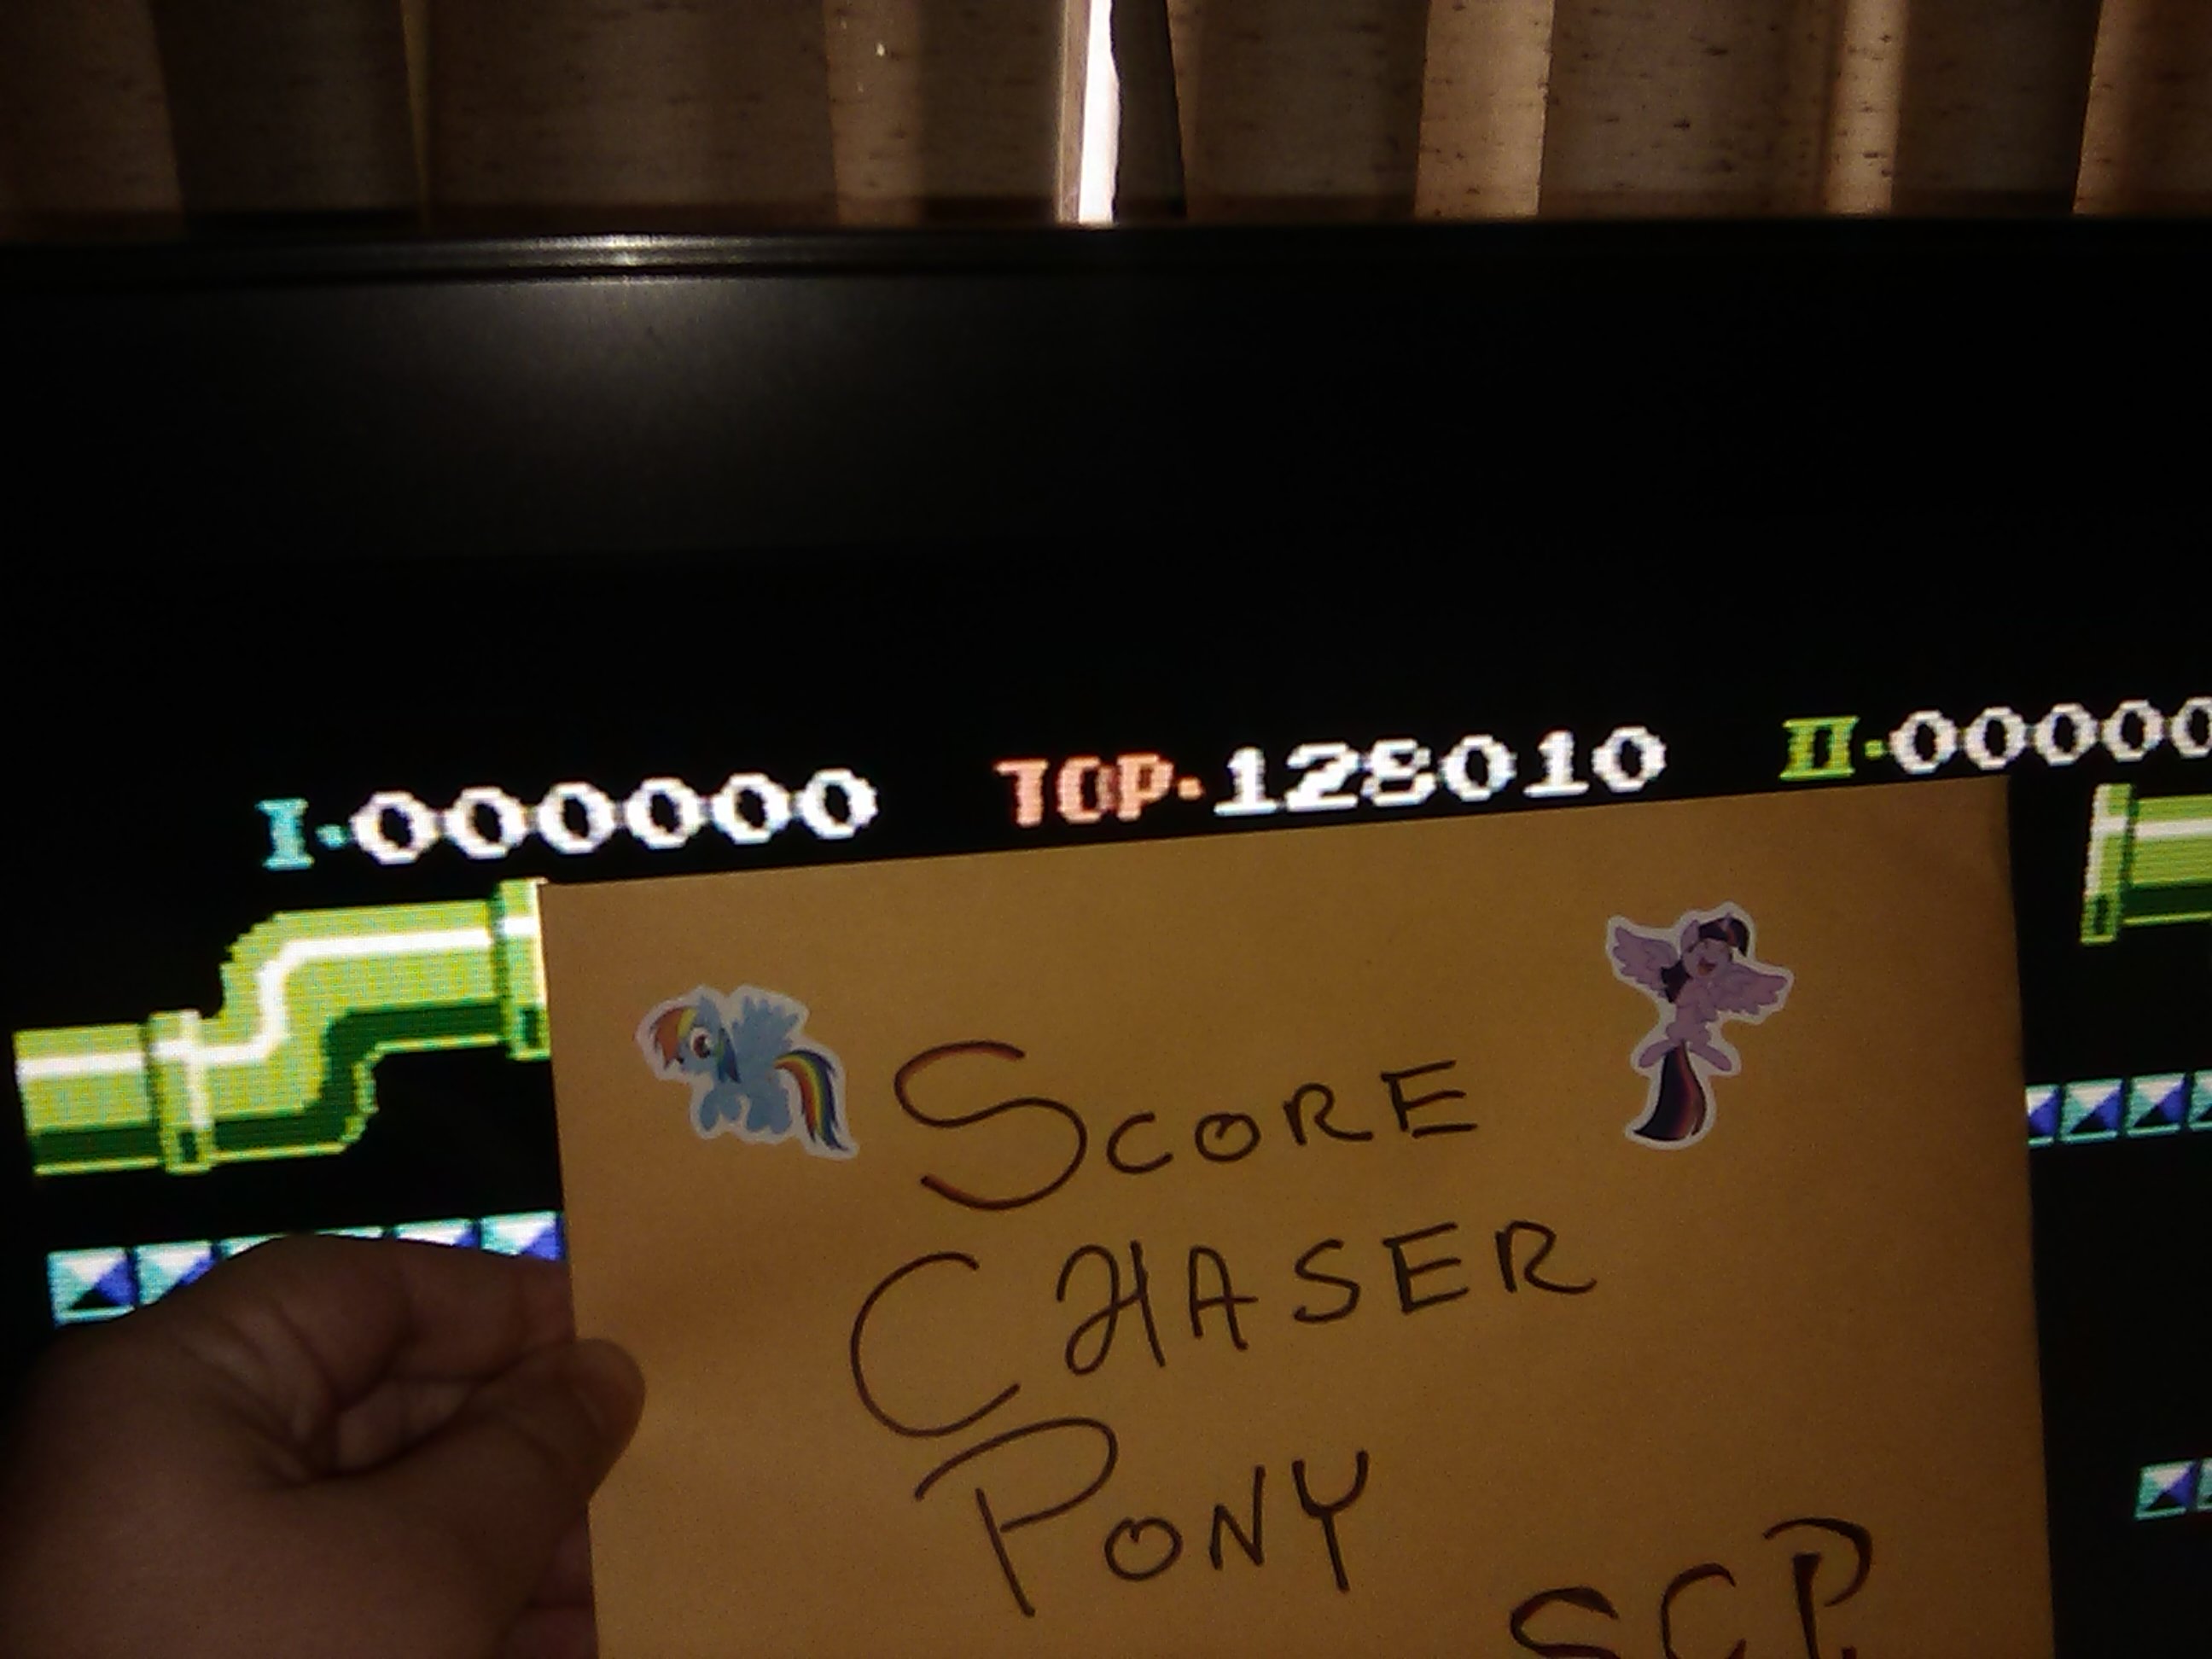 Scorechaserpony: Mario Bros. (NES/Famicom Emulated) 128,010 points on 2019-03-03 12:48:33